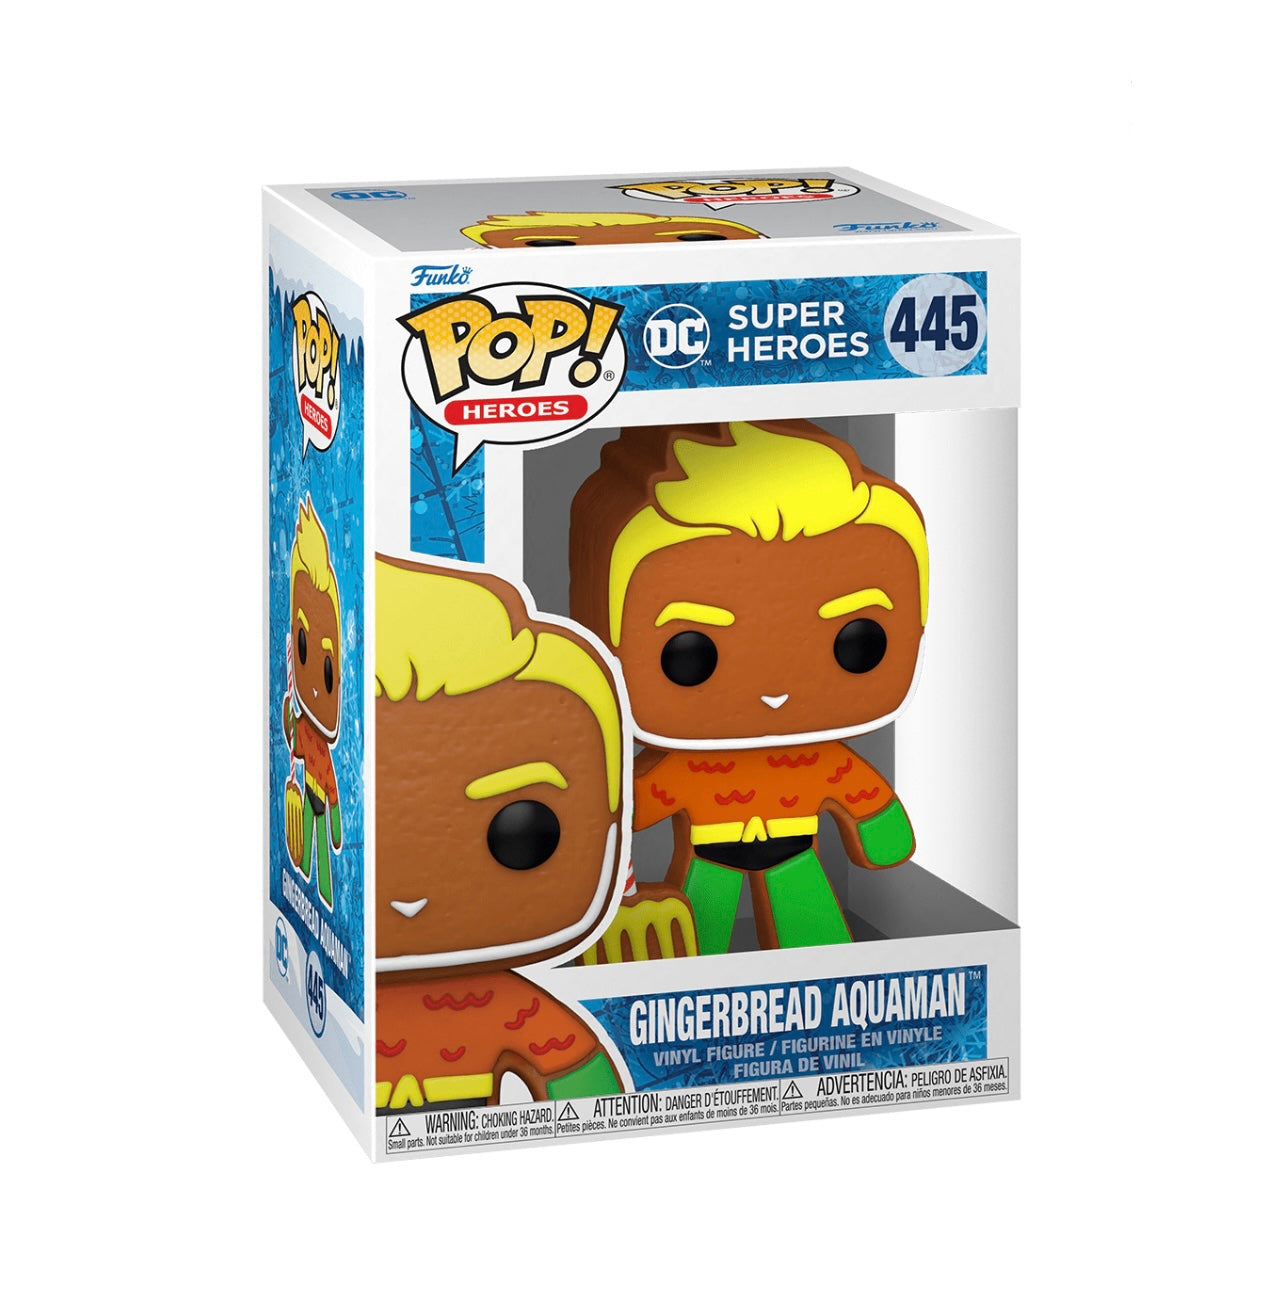 POP! Heroes Gingerbread Aquaman #445